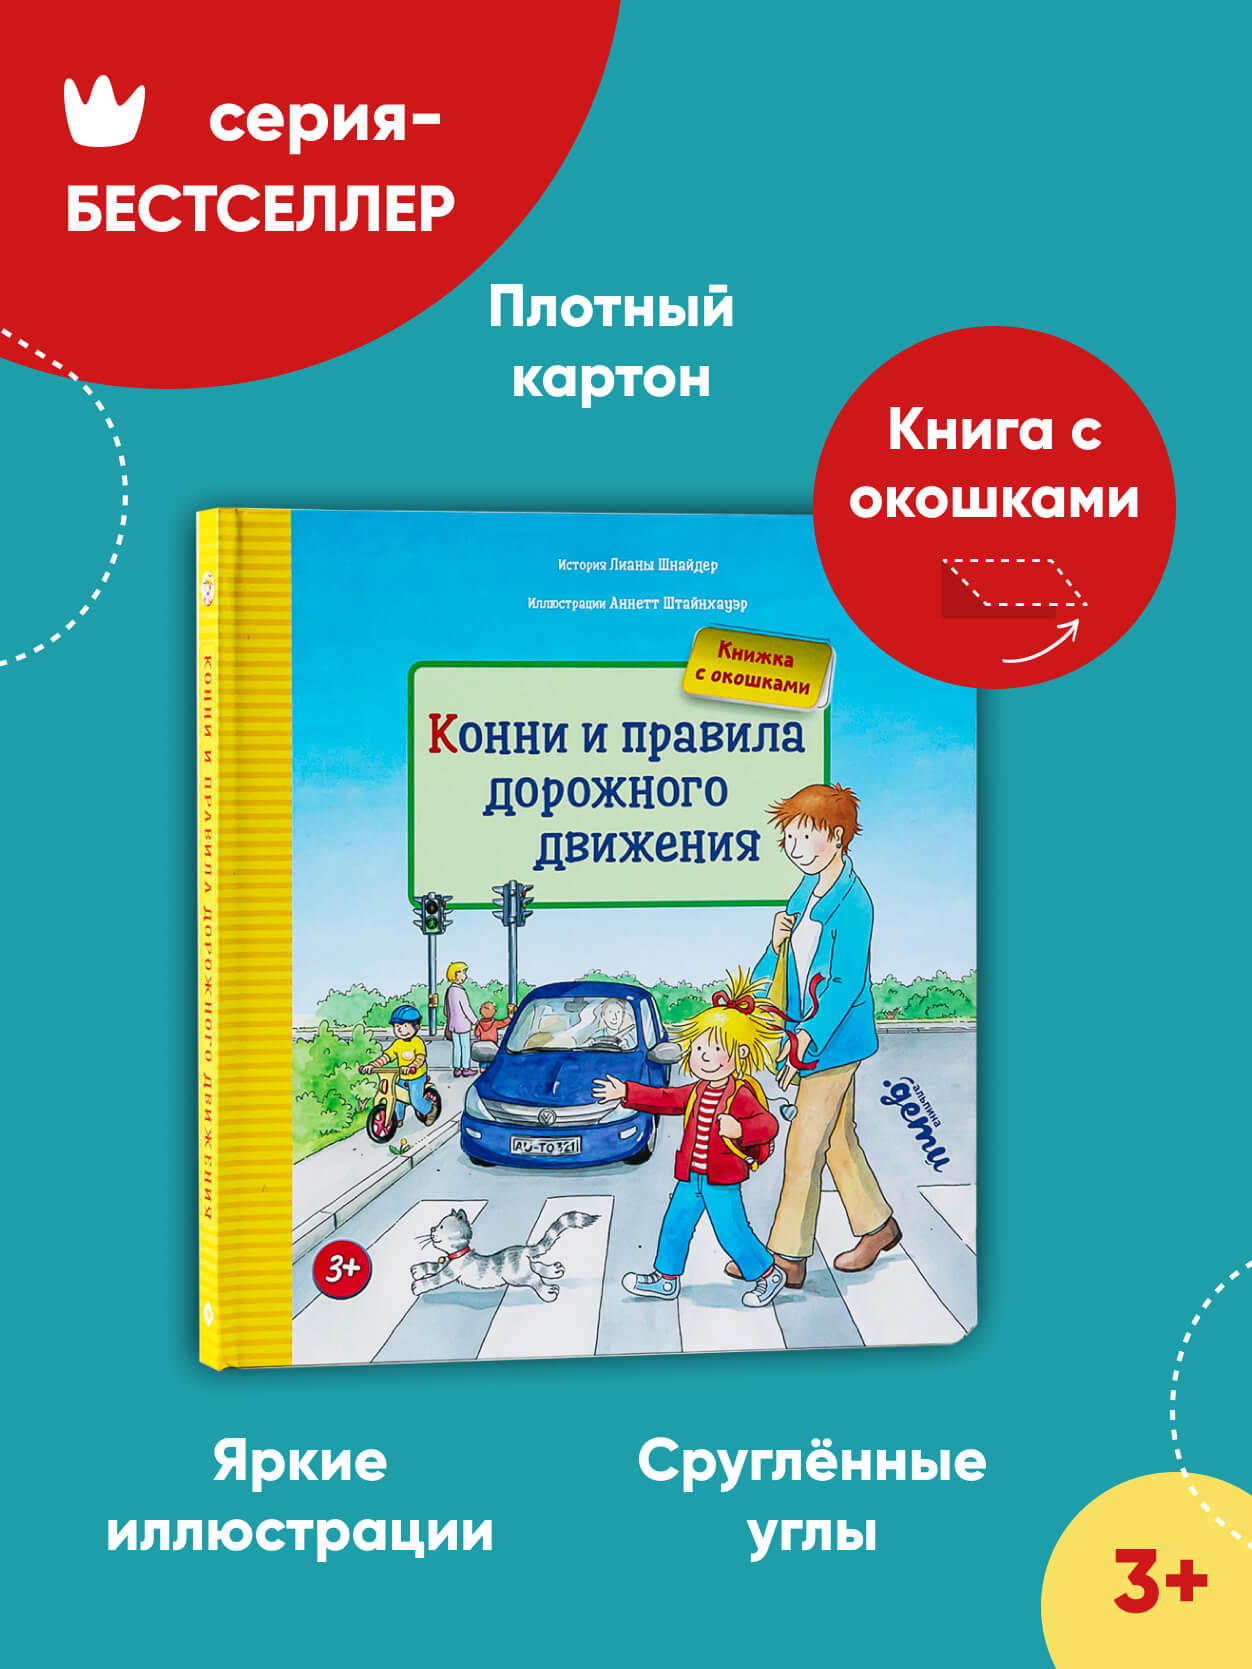 Правила дорожного движения | Московский Дом книги